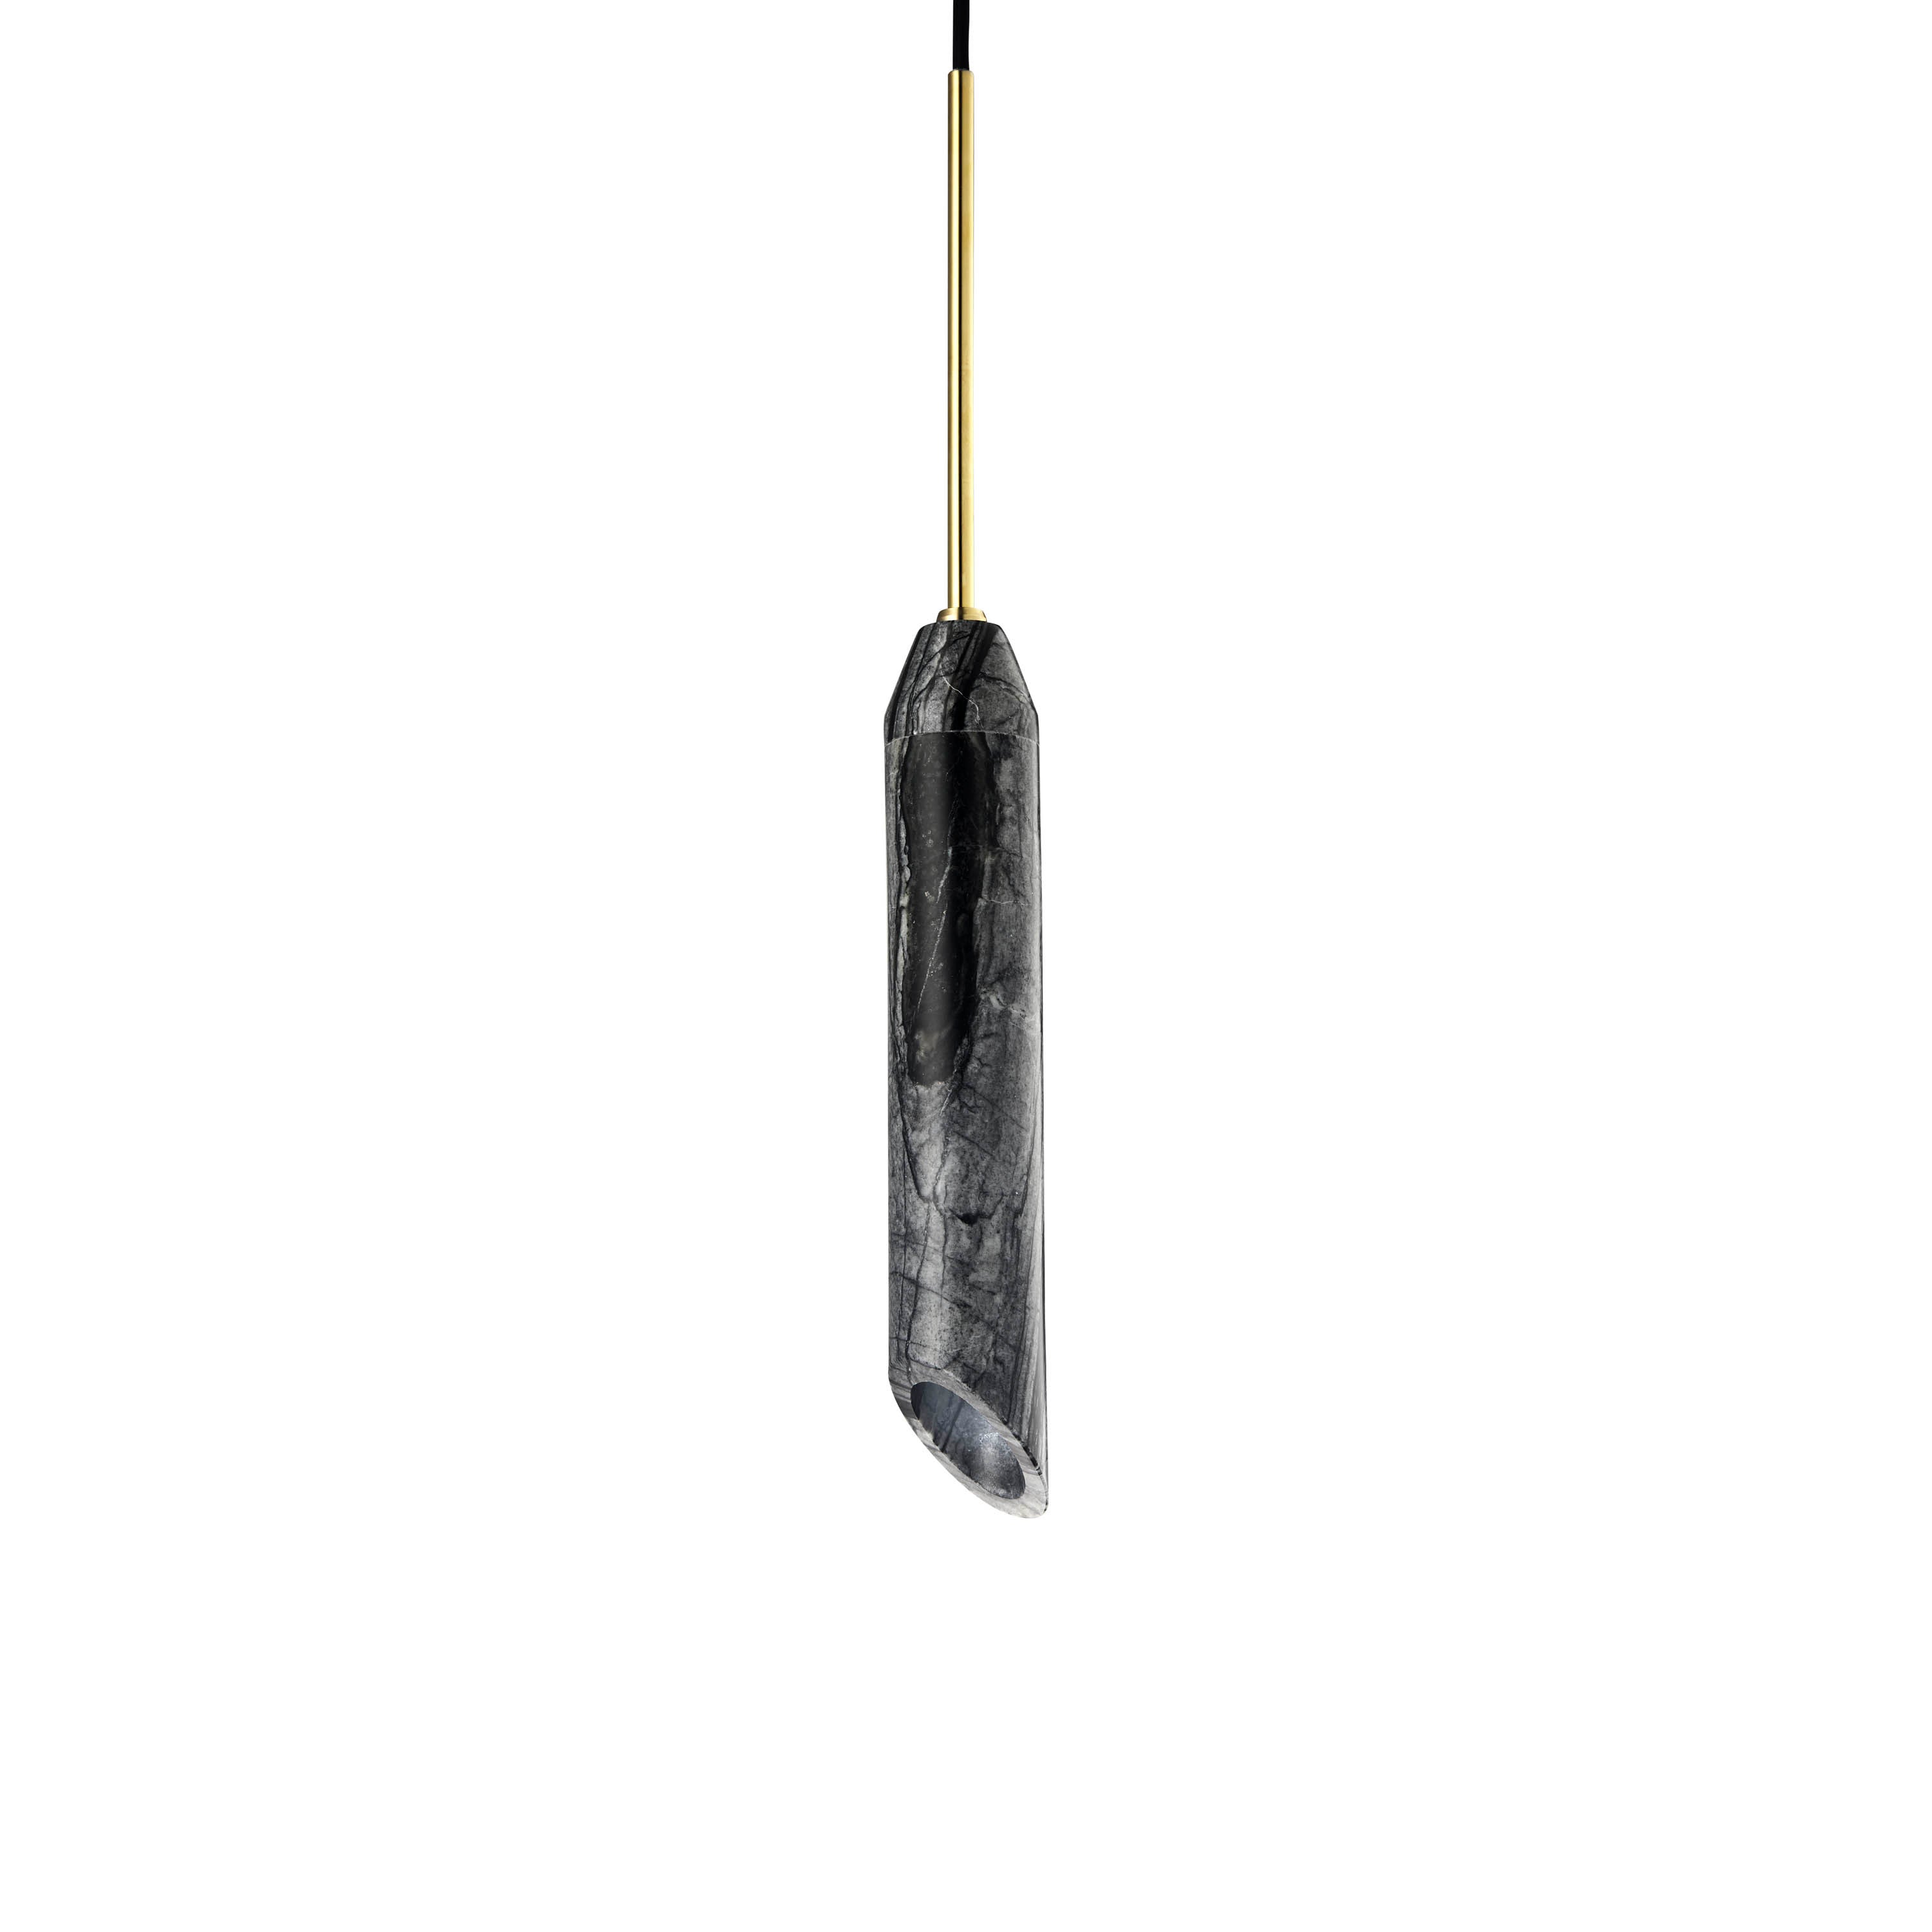 Pendel lampe i sort marmor med diagonalt snit og med guldfarvede detaljer. Lampen har en sort stofledning.